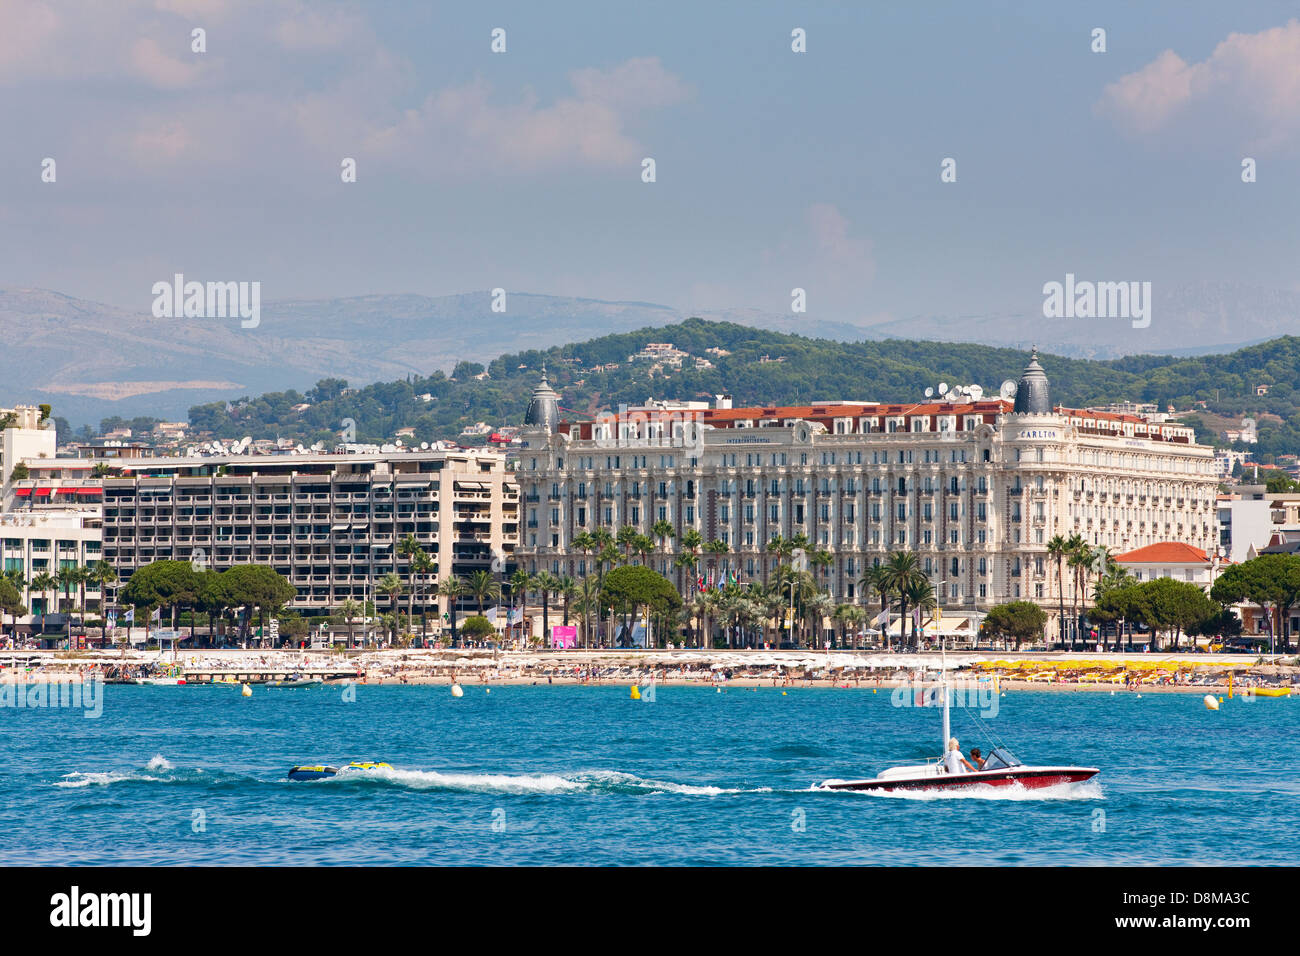 Le célèbre Hôtel Carlton, Boulevard de la Croisette, au bord de l'eau, Cannes, France Banque D'Images